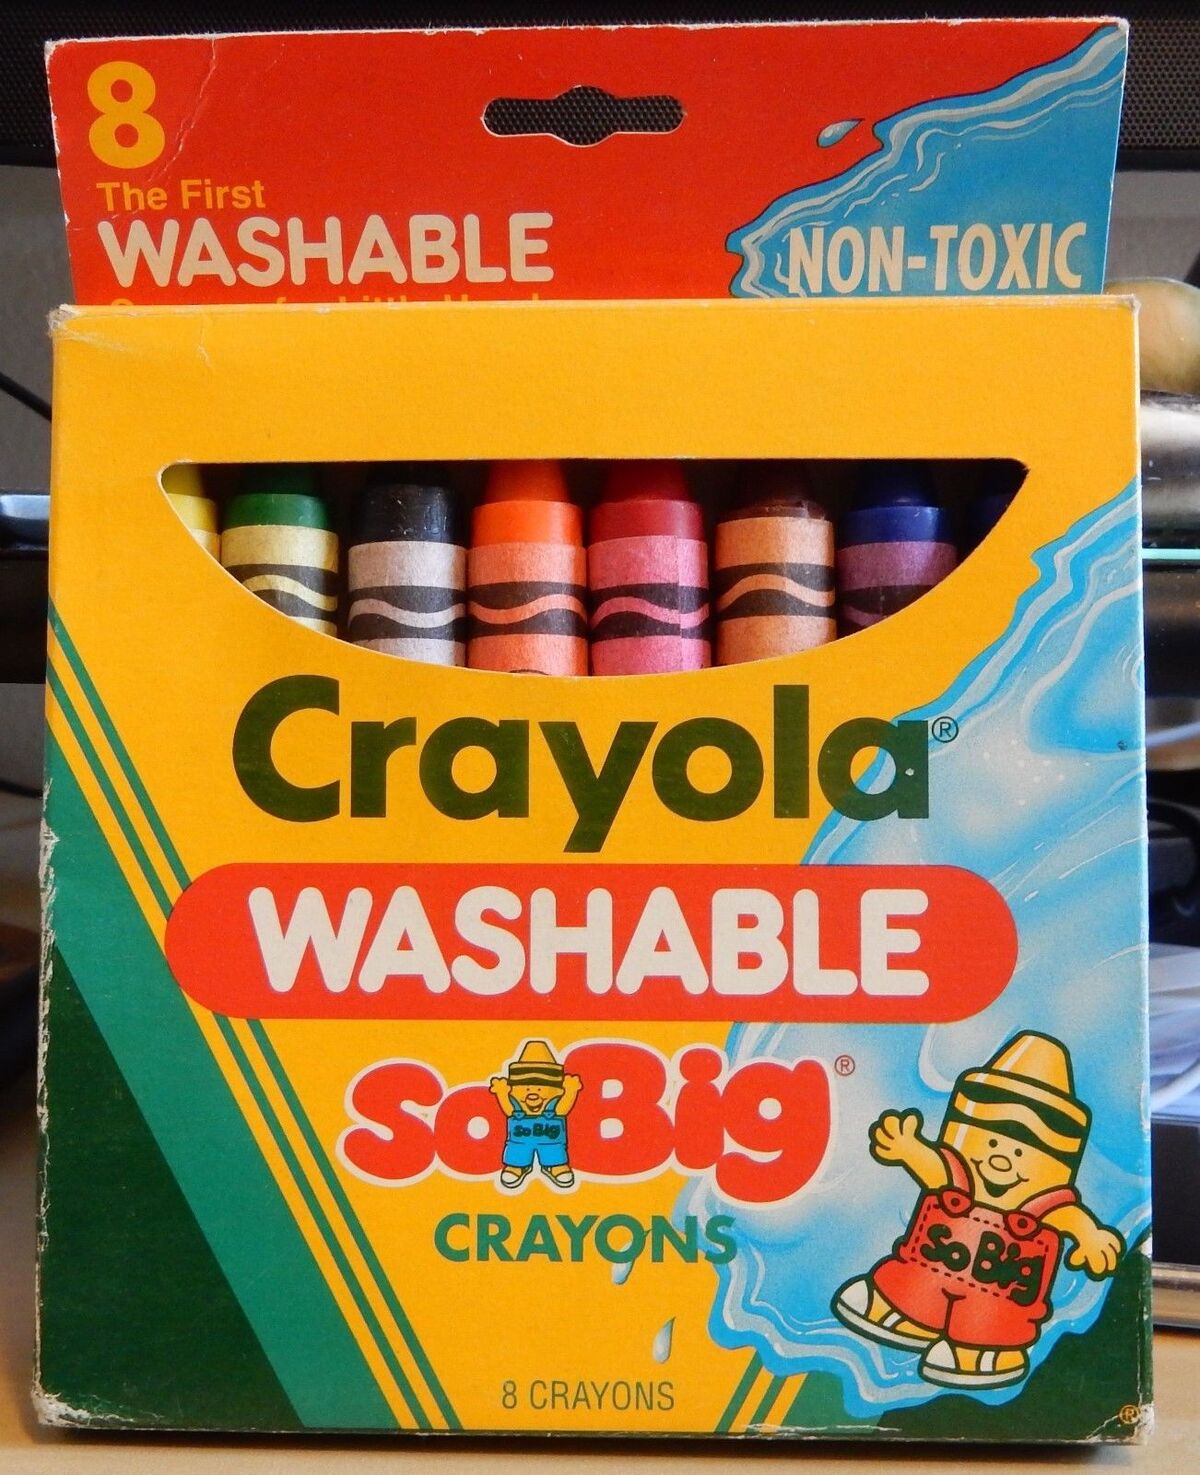 Crayola Kid's First Jumbo Washable Crayons